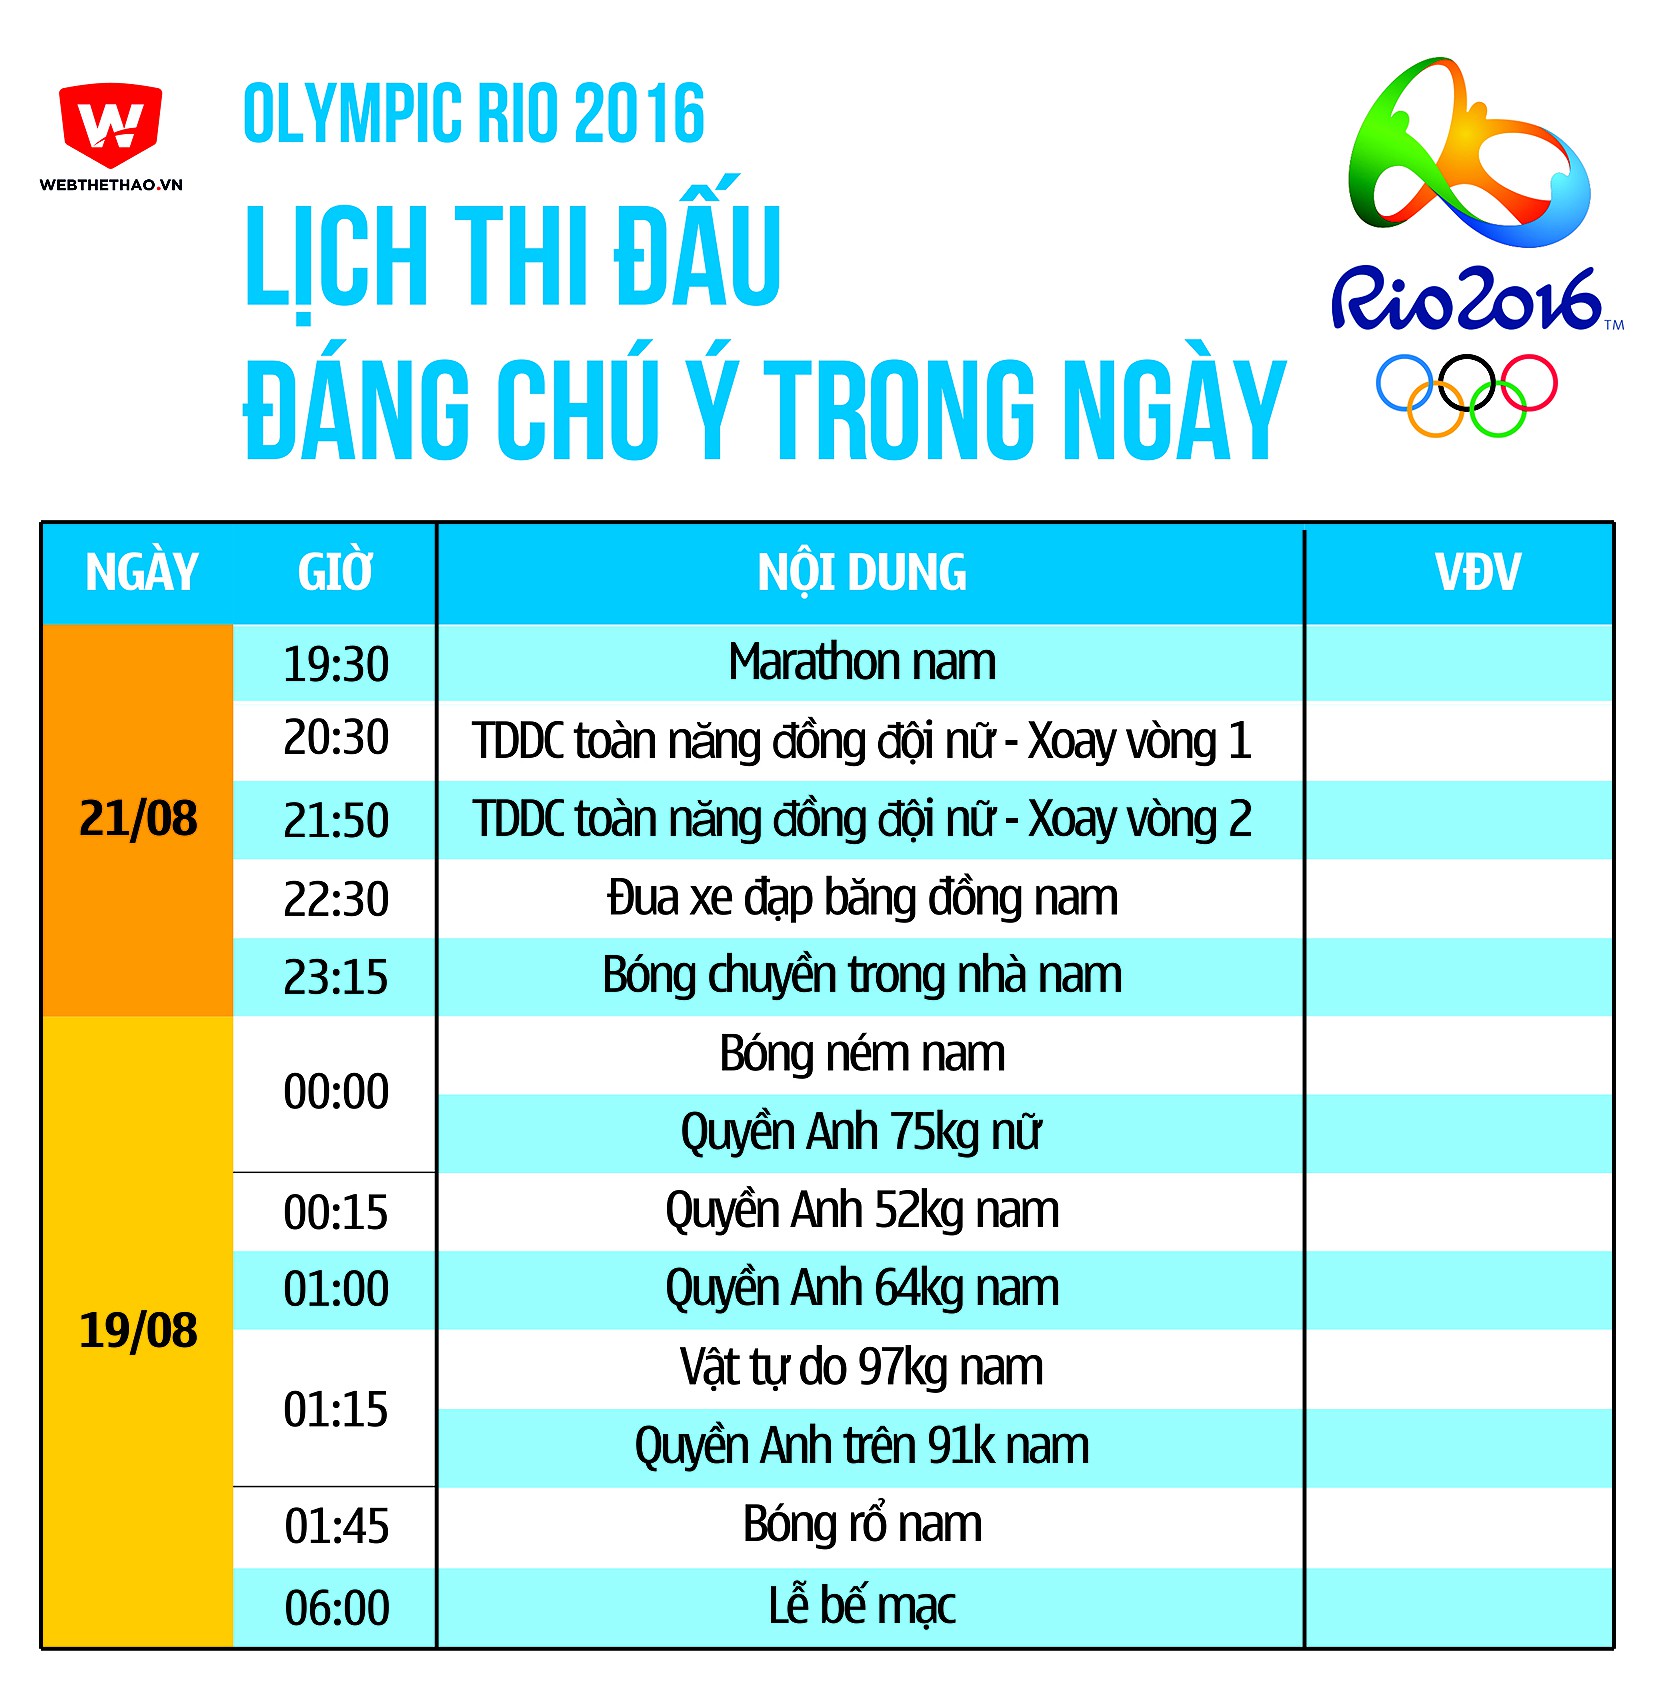 Olympic 2016: Lịch thi đấu từ ngày 21/08 đến rạng sáng ngày 22/08.